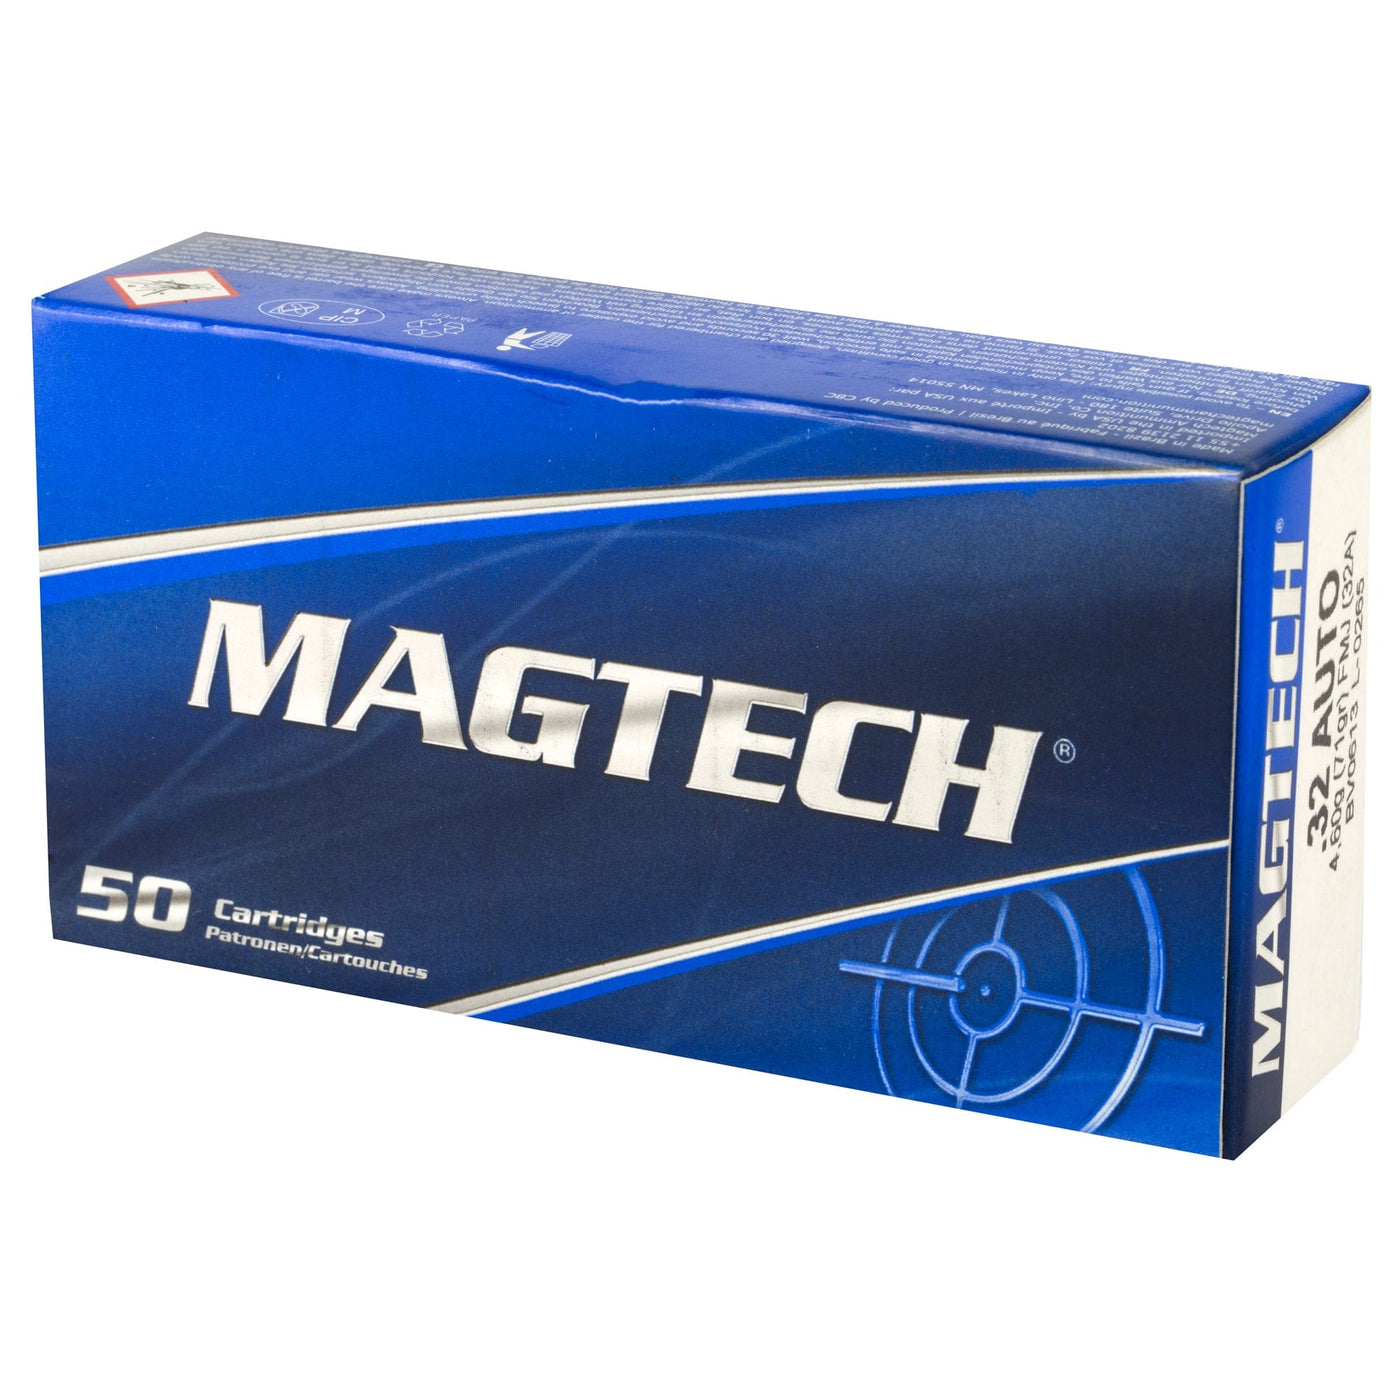 Magtech Magtech 32acp 71gr Fmj 50/1000 Ammo